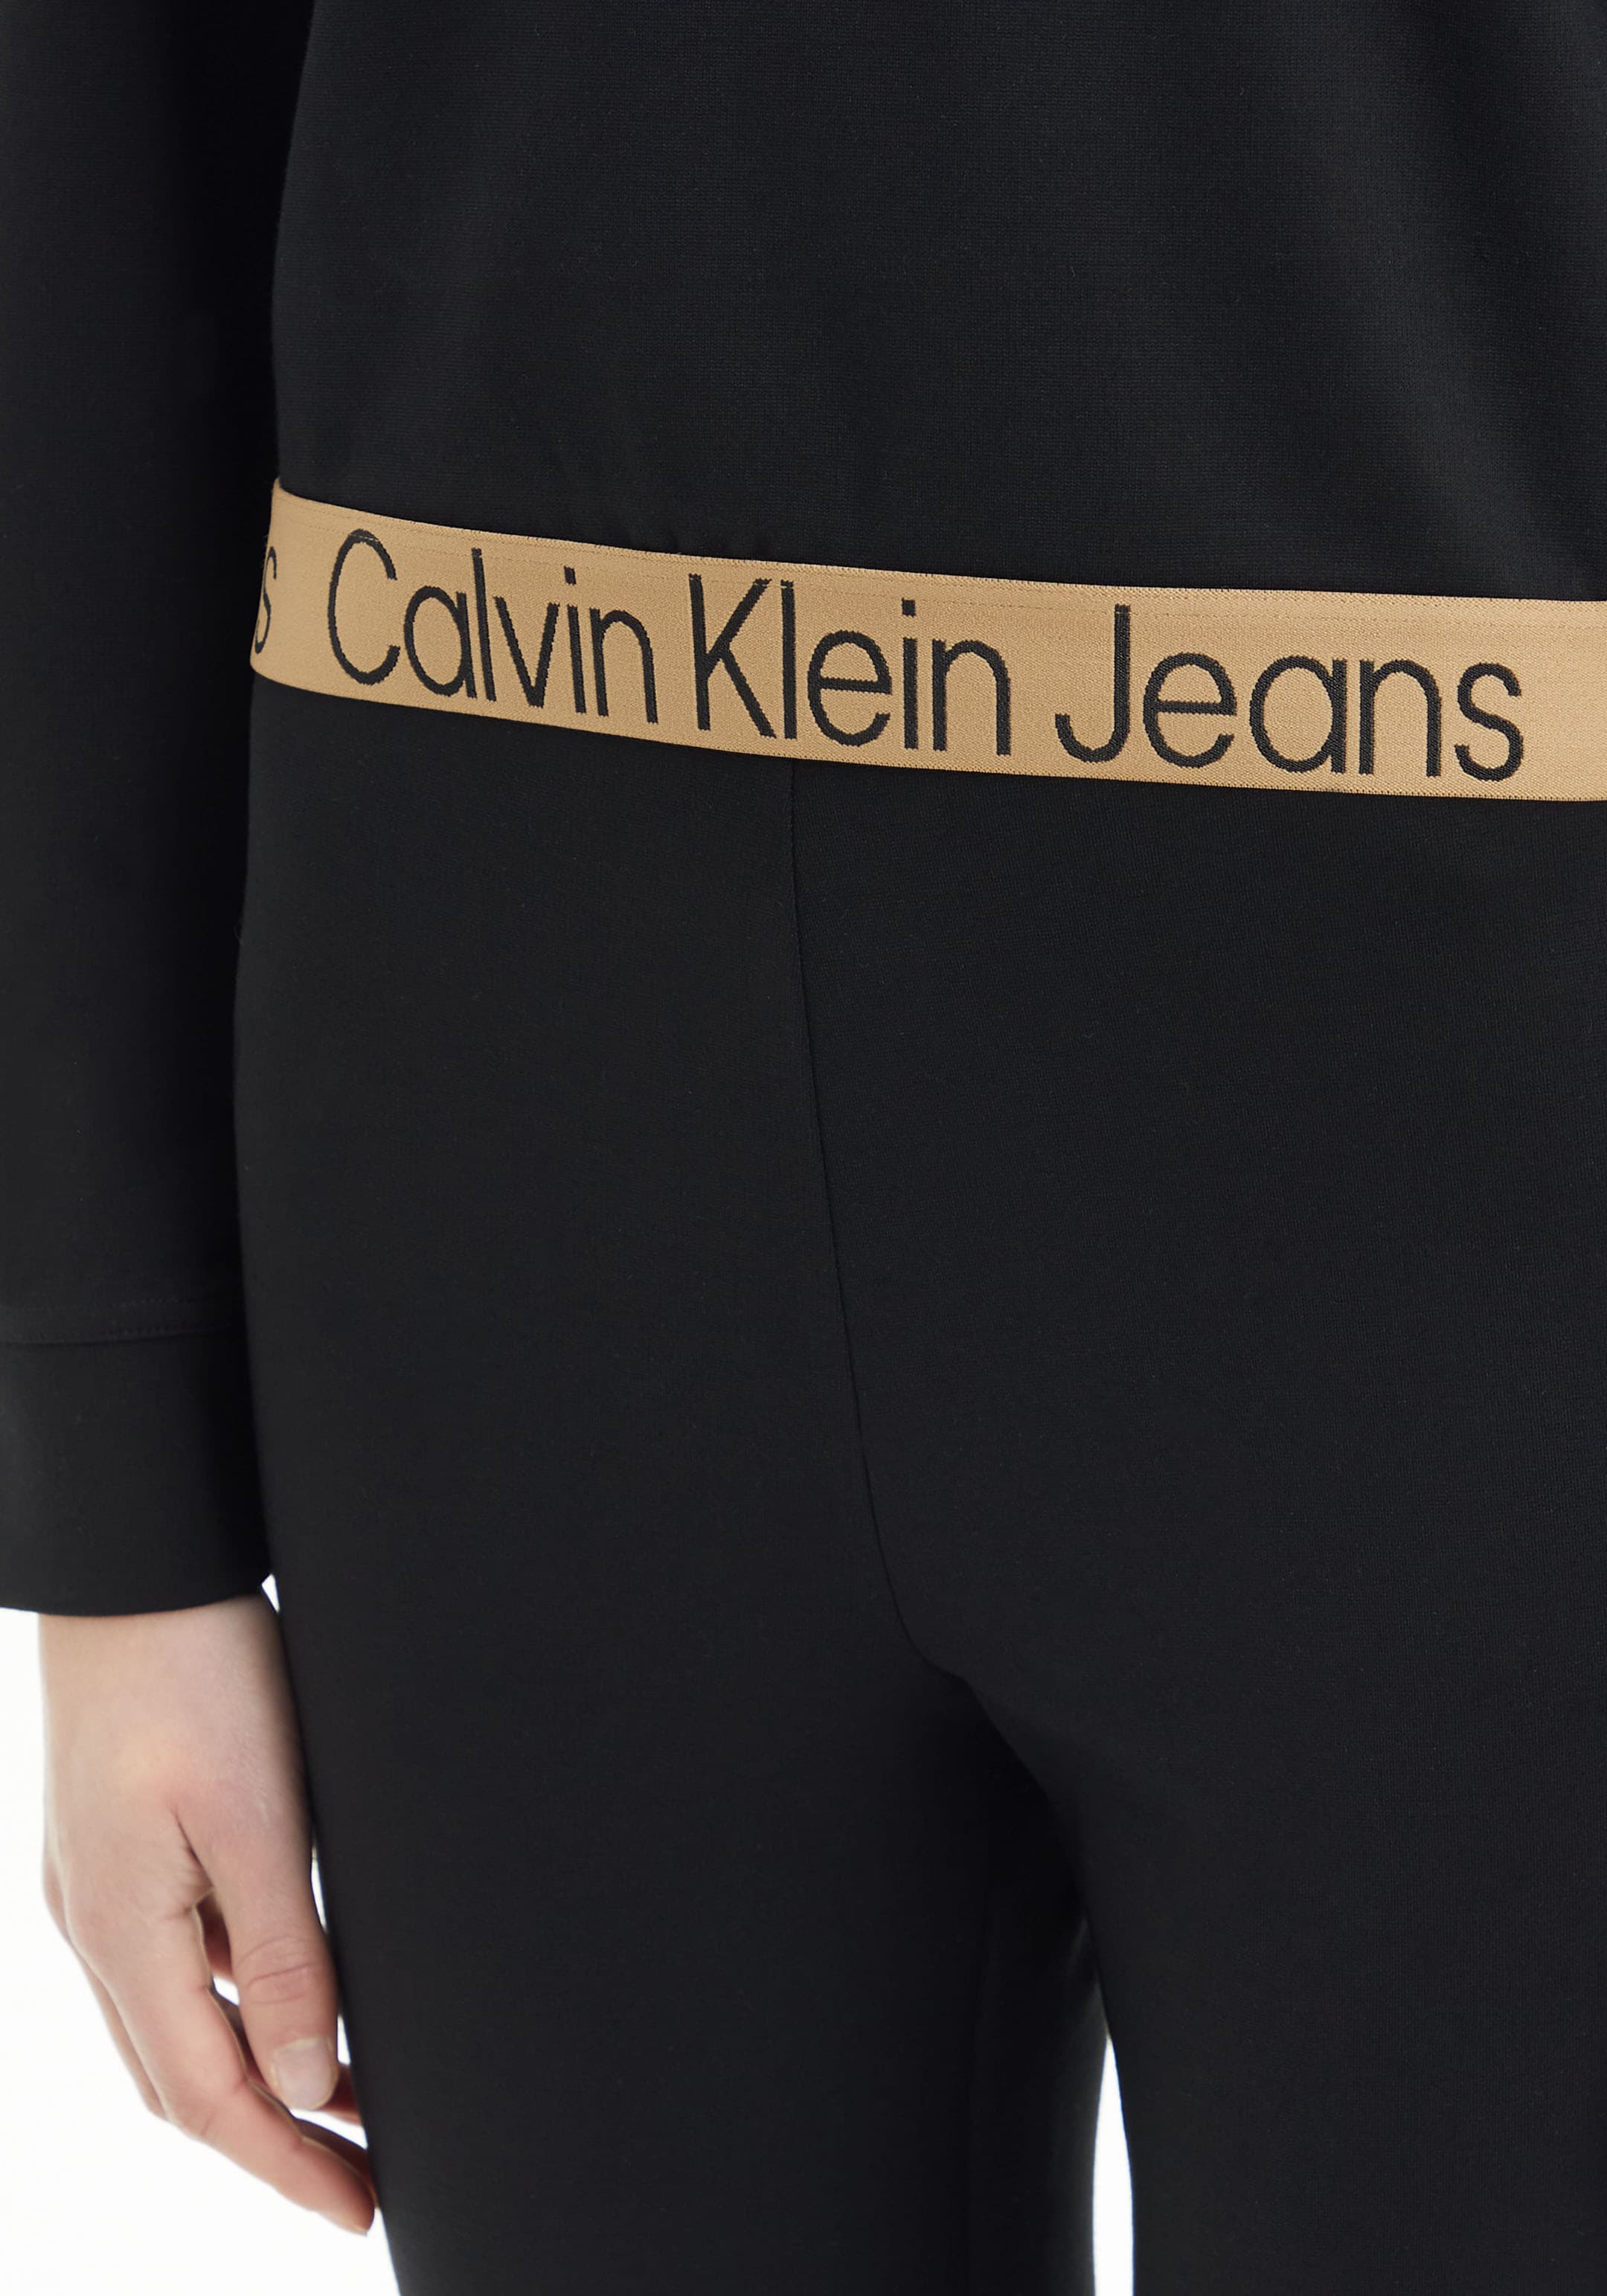 »LOGO bestellen TAPE mit Logoschriftzügen MILANO HOODIE«, Jeans Kapuzenshirt Klein Calvin Calvin Klein Jeans